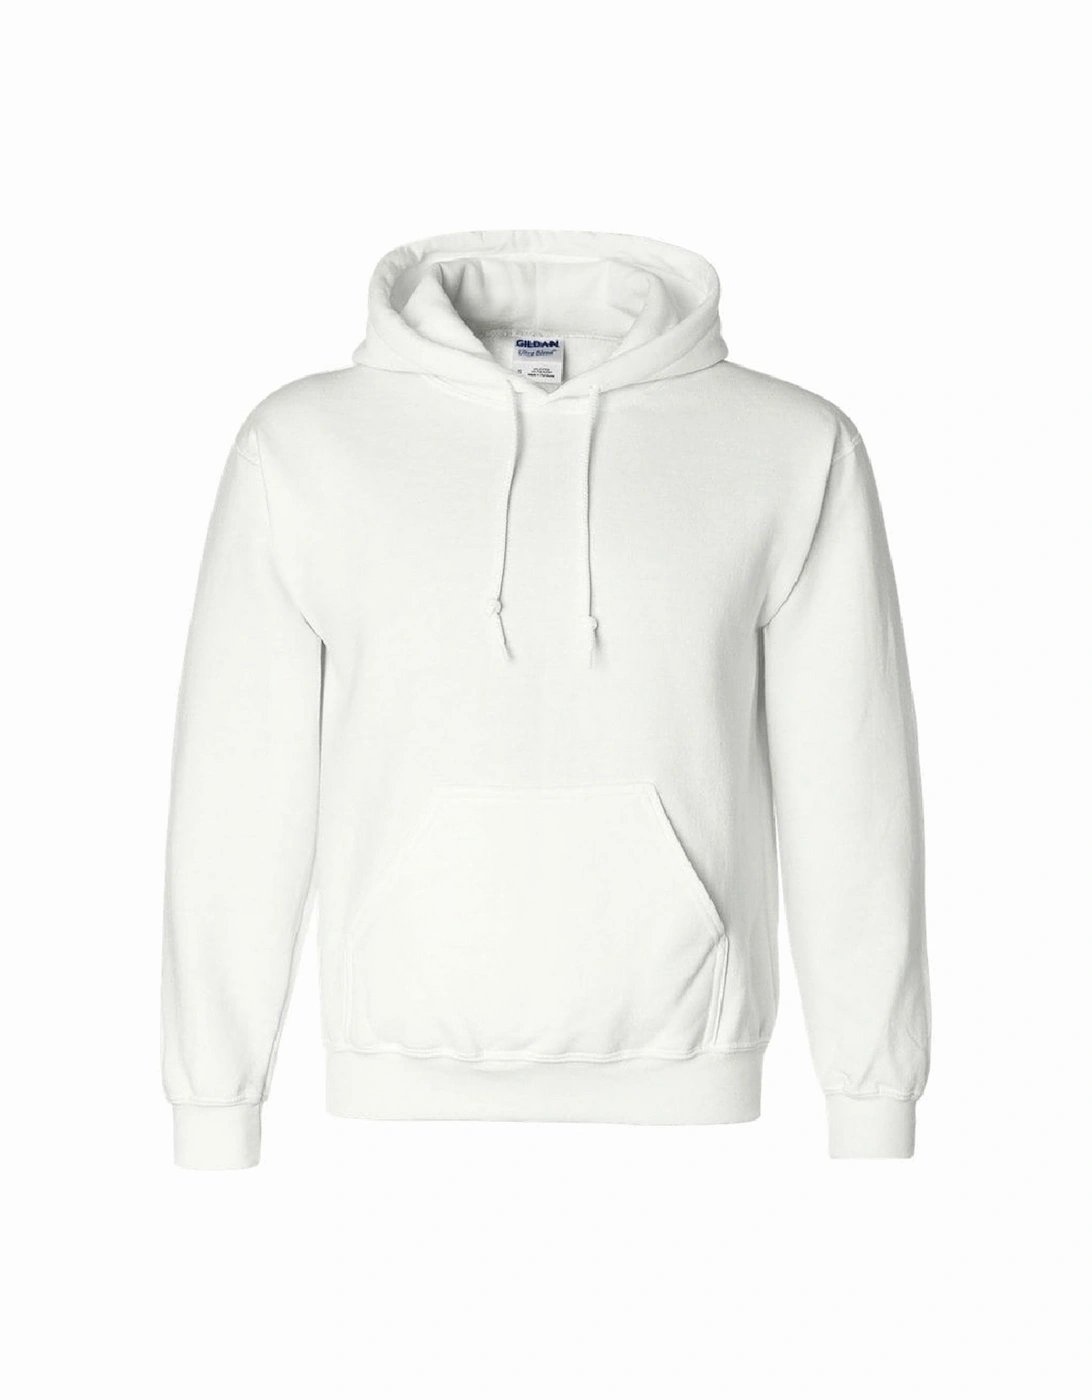 Heavyweight DryBlend Adult Unisex Hooded Sweatshirt Top / Hoodie (13 Colours), 6 of 5